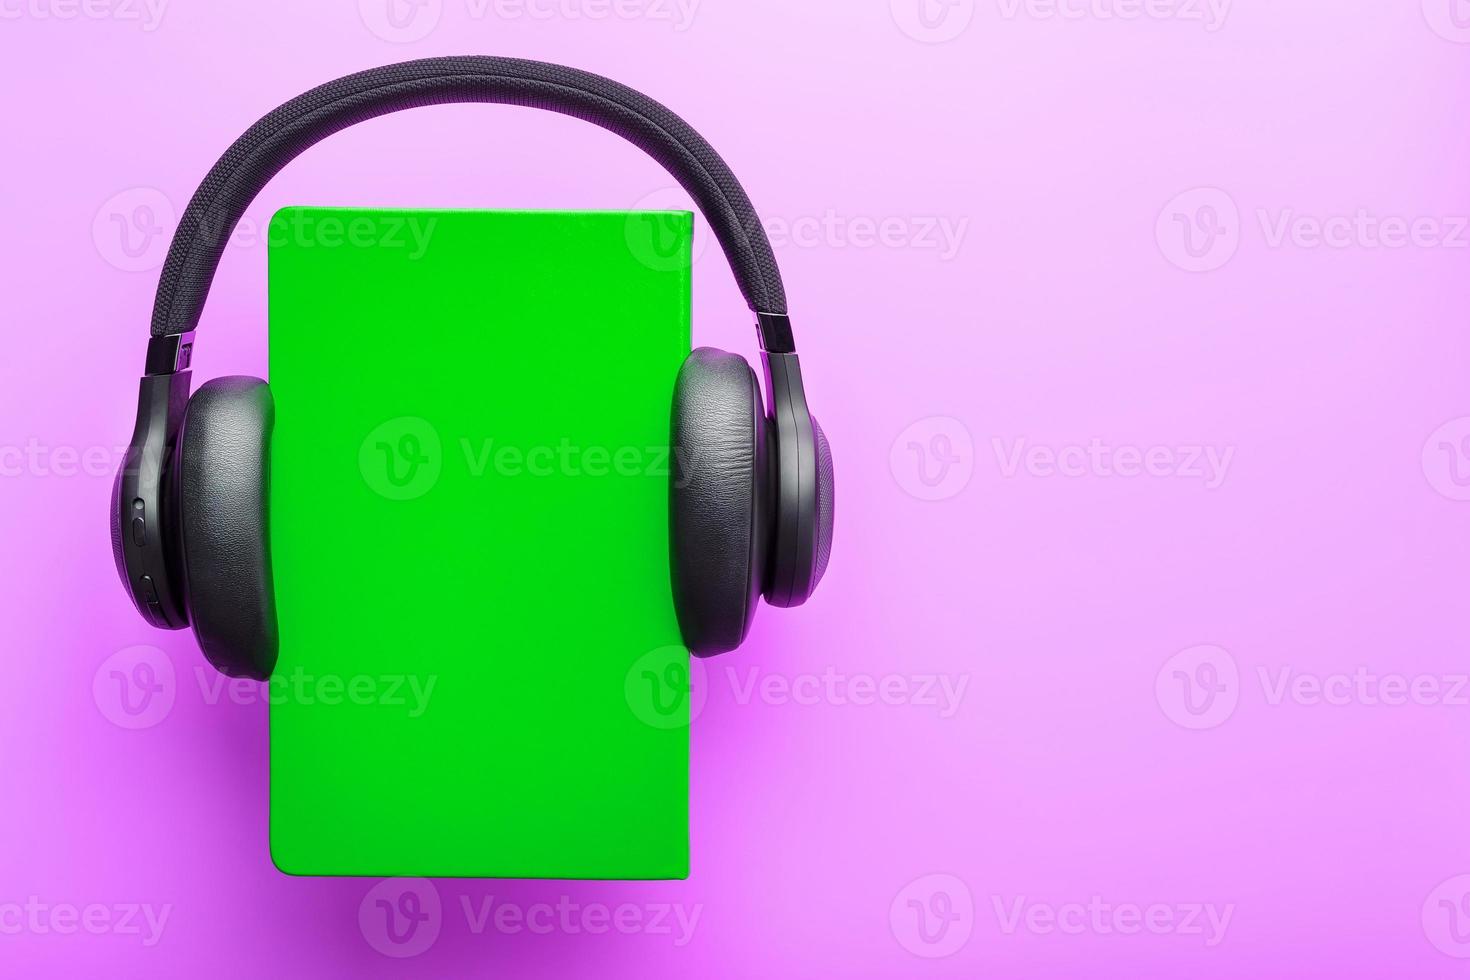 les écouteurs sont portés sur un livre dans une couverture rigide verte sur fond lilas, vue de dessus. photo